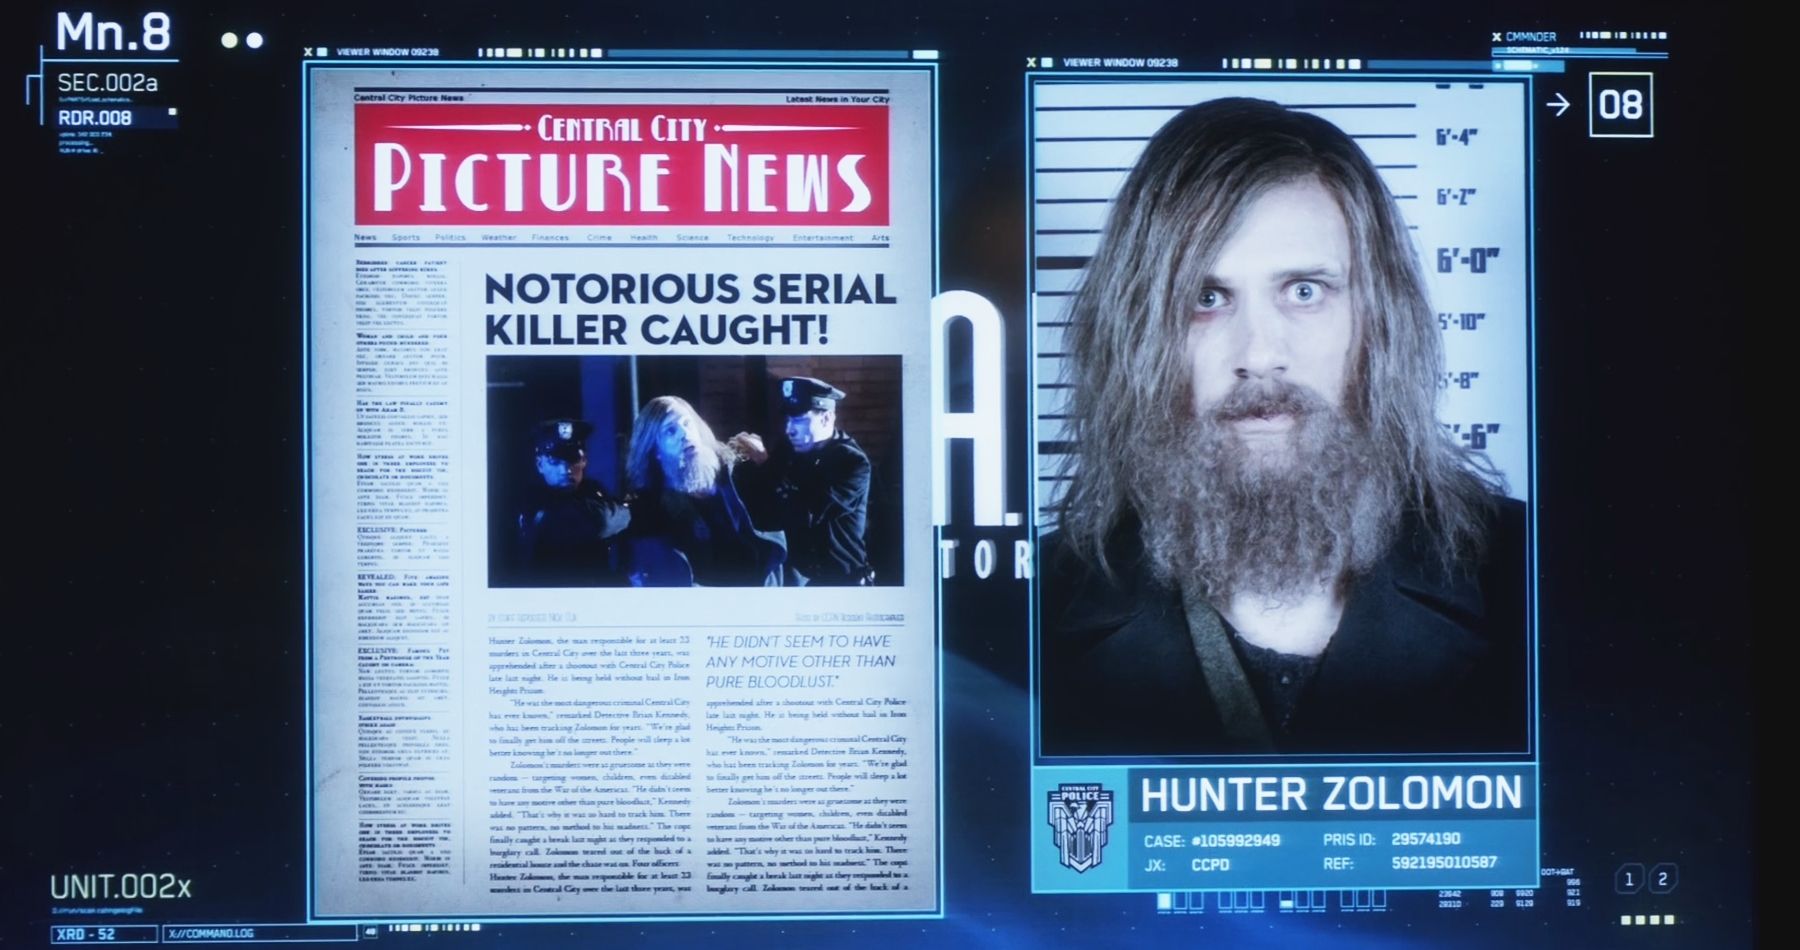 Flash Hunter Zolomon Mugshot Murderer